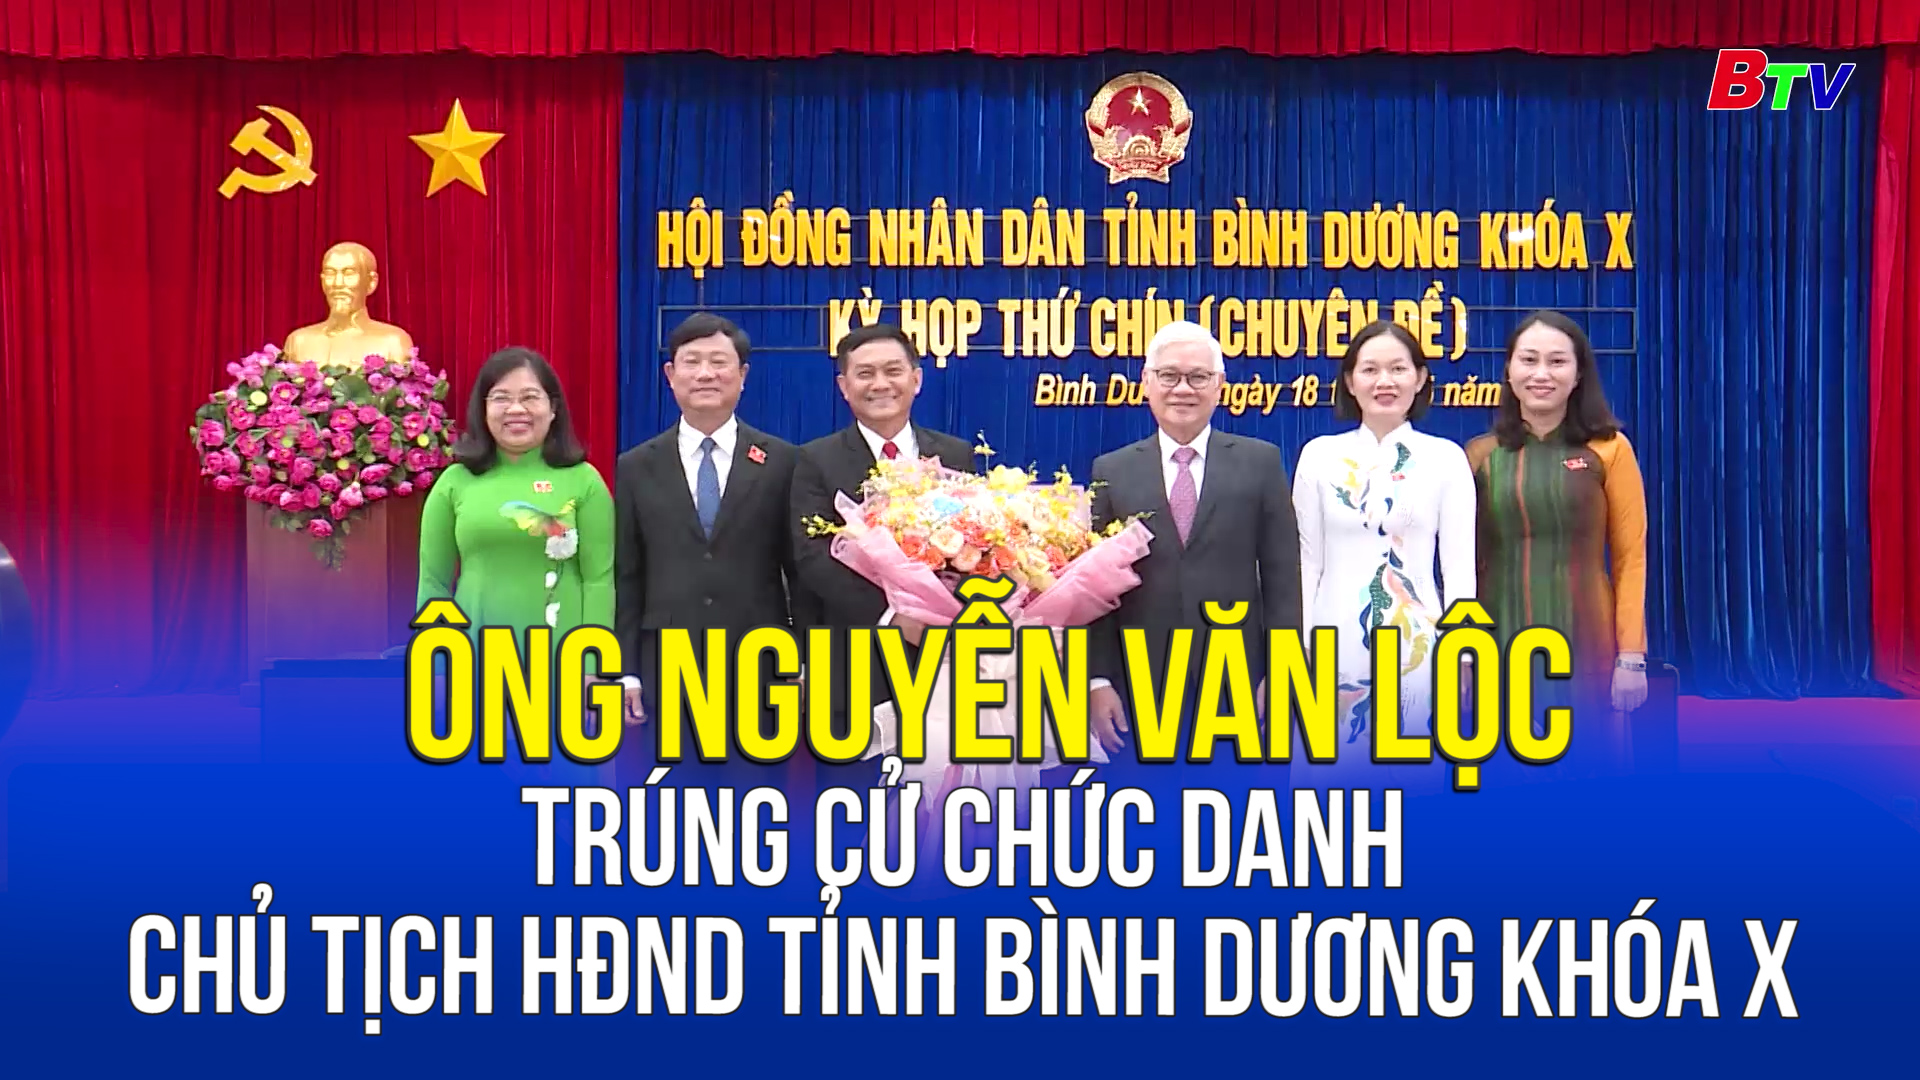 Ông Nguyễn Văn Lộc trúng cử chức danh Chủ tịch HĐND tỉnh Bình Dương khóa X